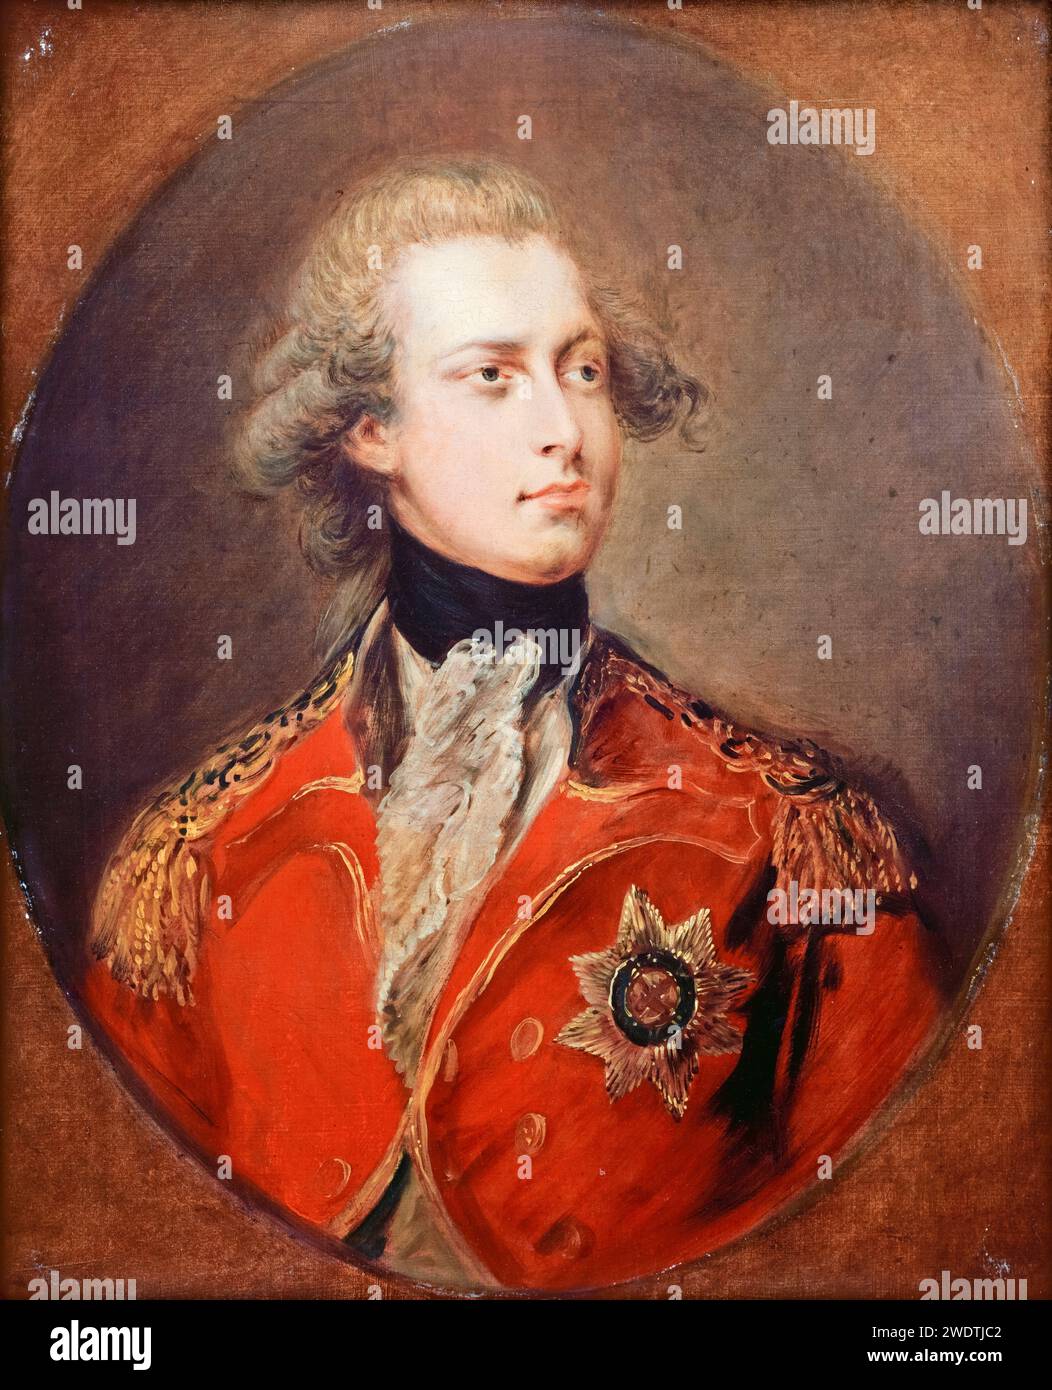 Georg IV. (1762–1830) als Prinz von Wales, später König Georg IV. Von Großbritannien und Hannover (1820–1830), Porträtgemälde in Öl auf Leinwand von Gainsborough Dupont, 1781 Stockfoto